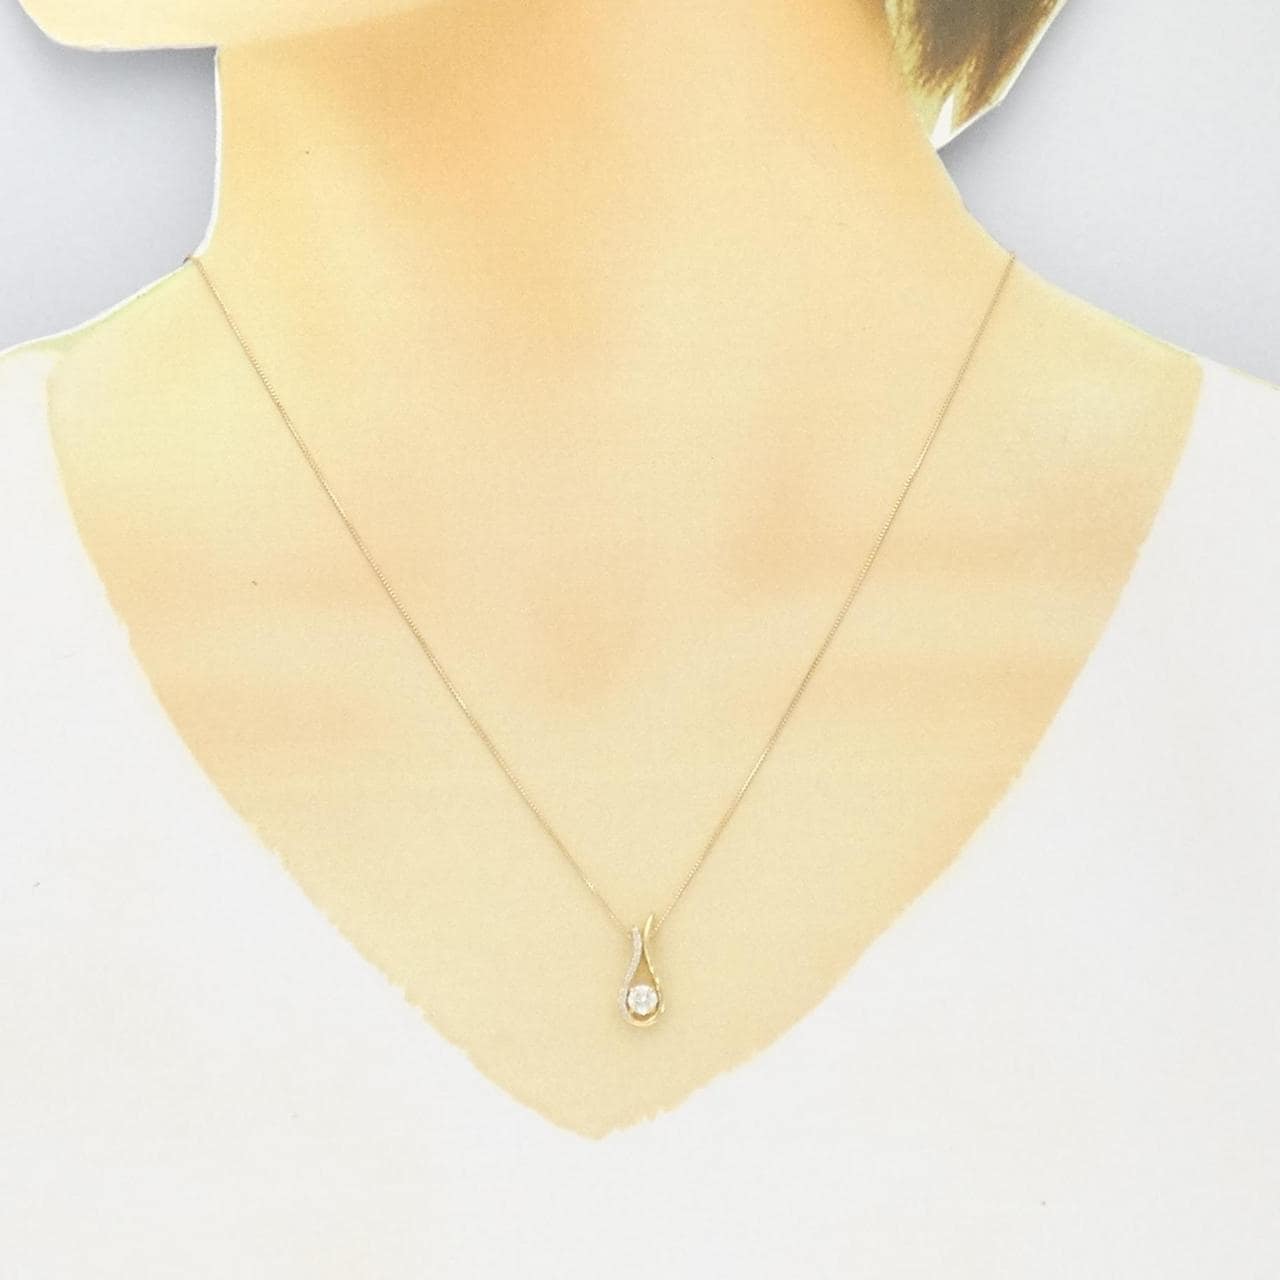 [BRAND NEW] K18YG Diamond Necklace 0.239CT I SI2 Fair